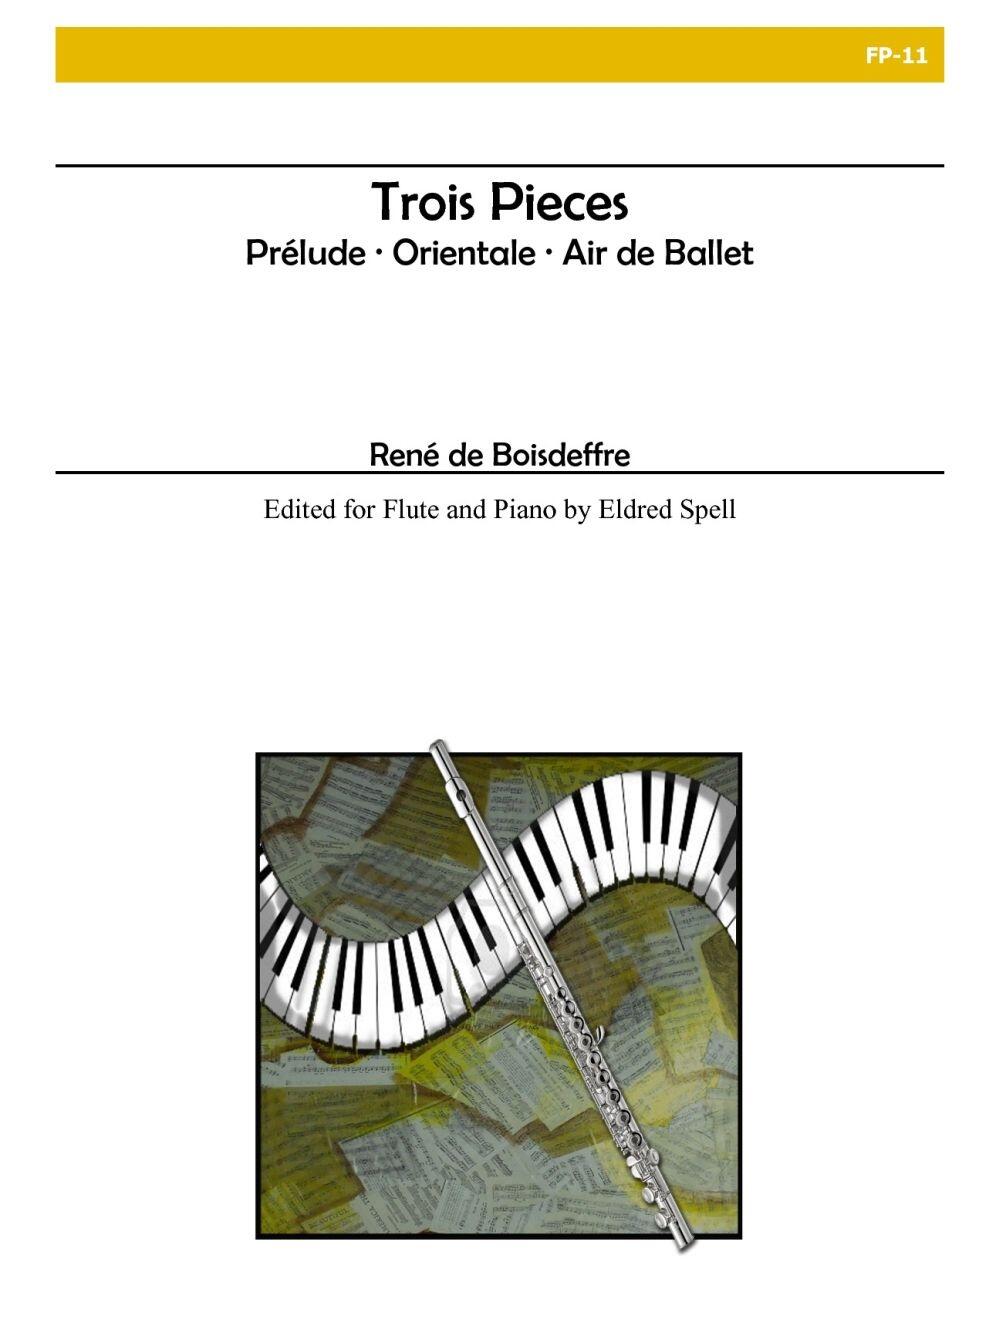 Trois Pièces pour flûte et piano : photo 1